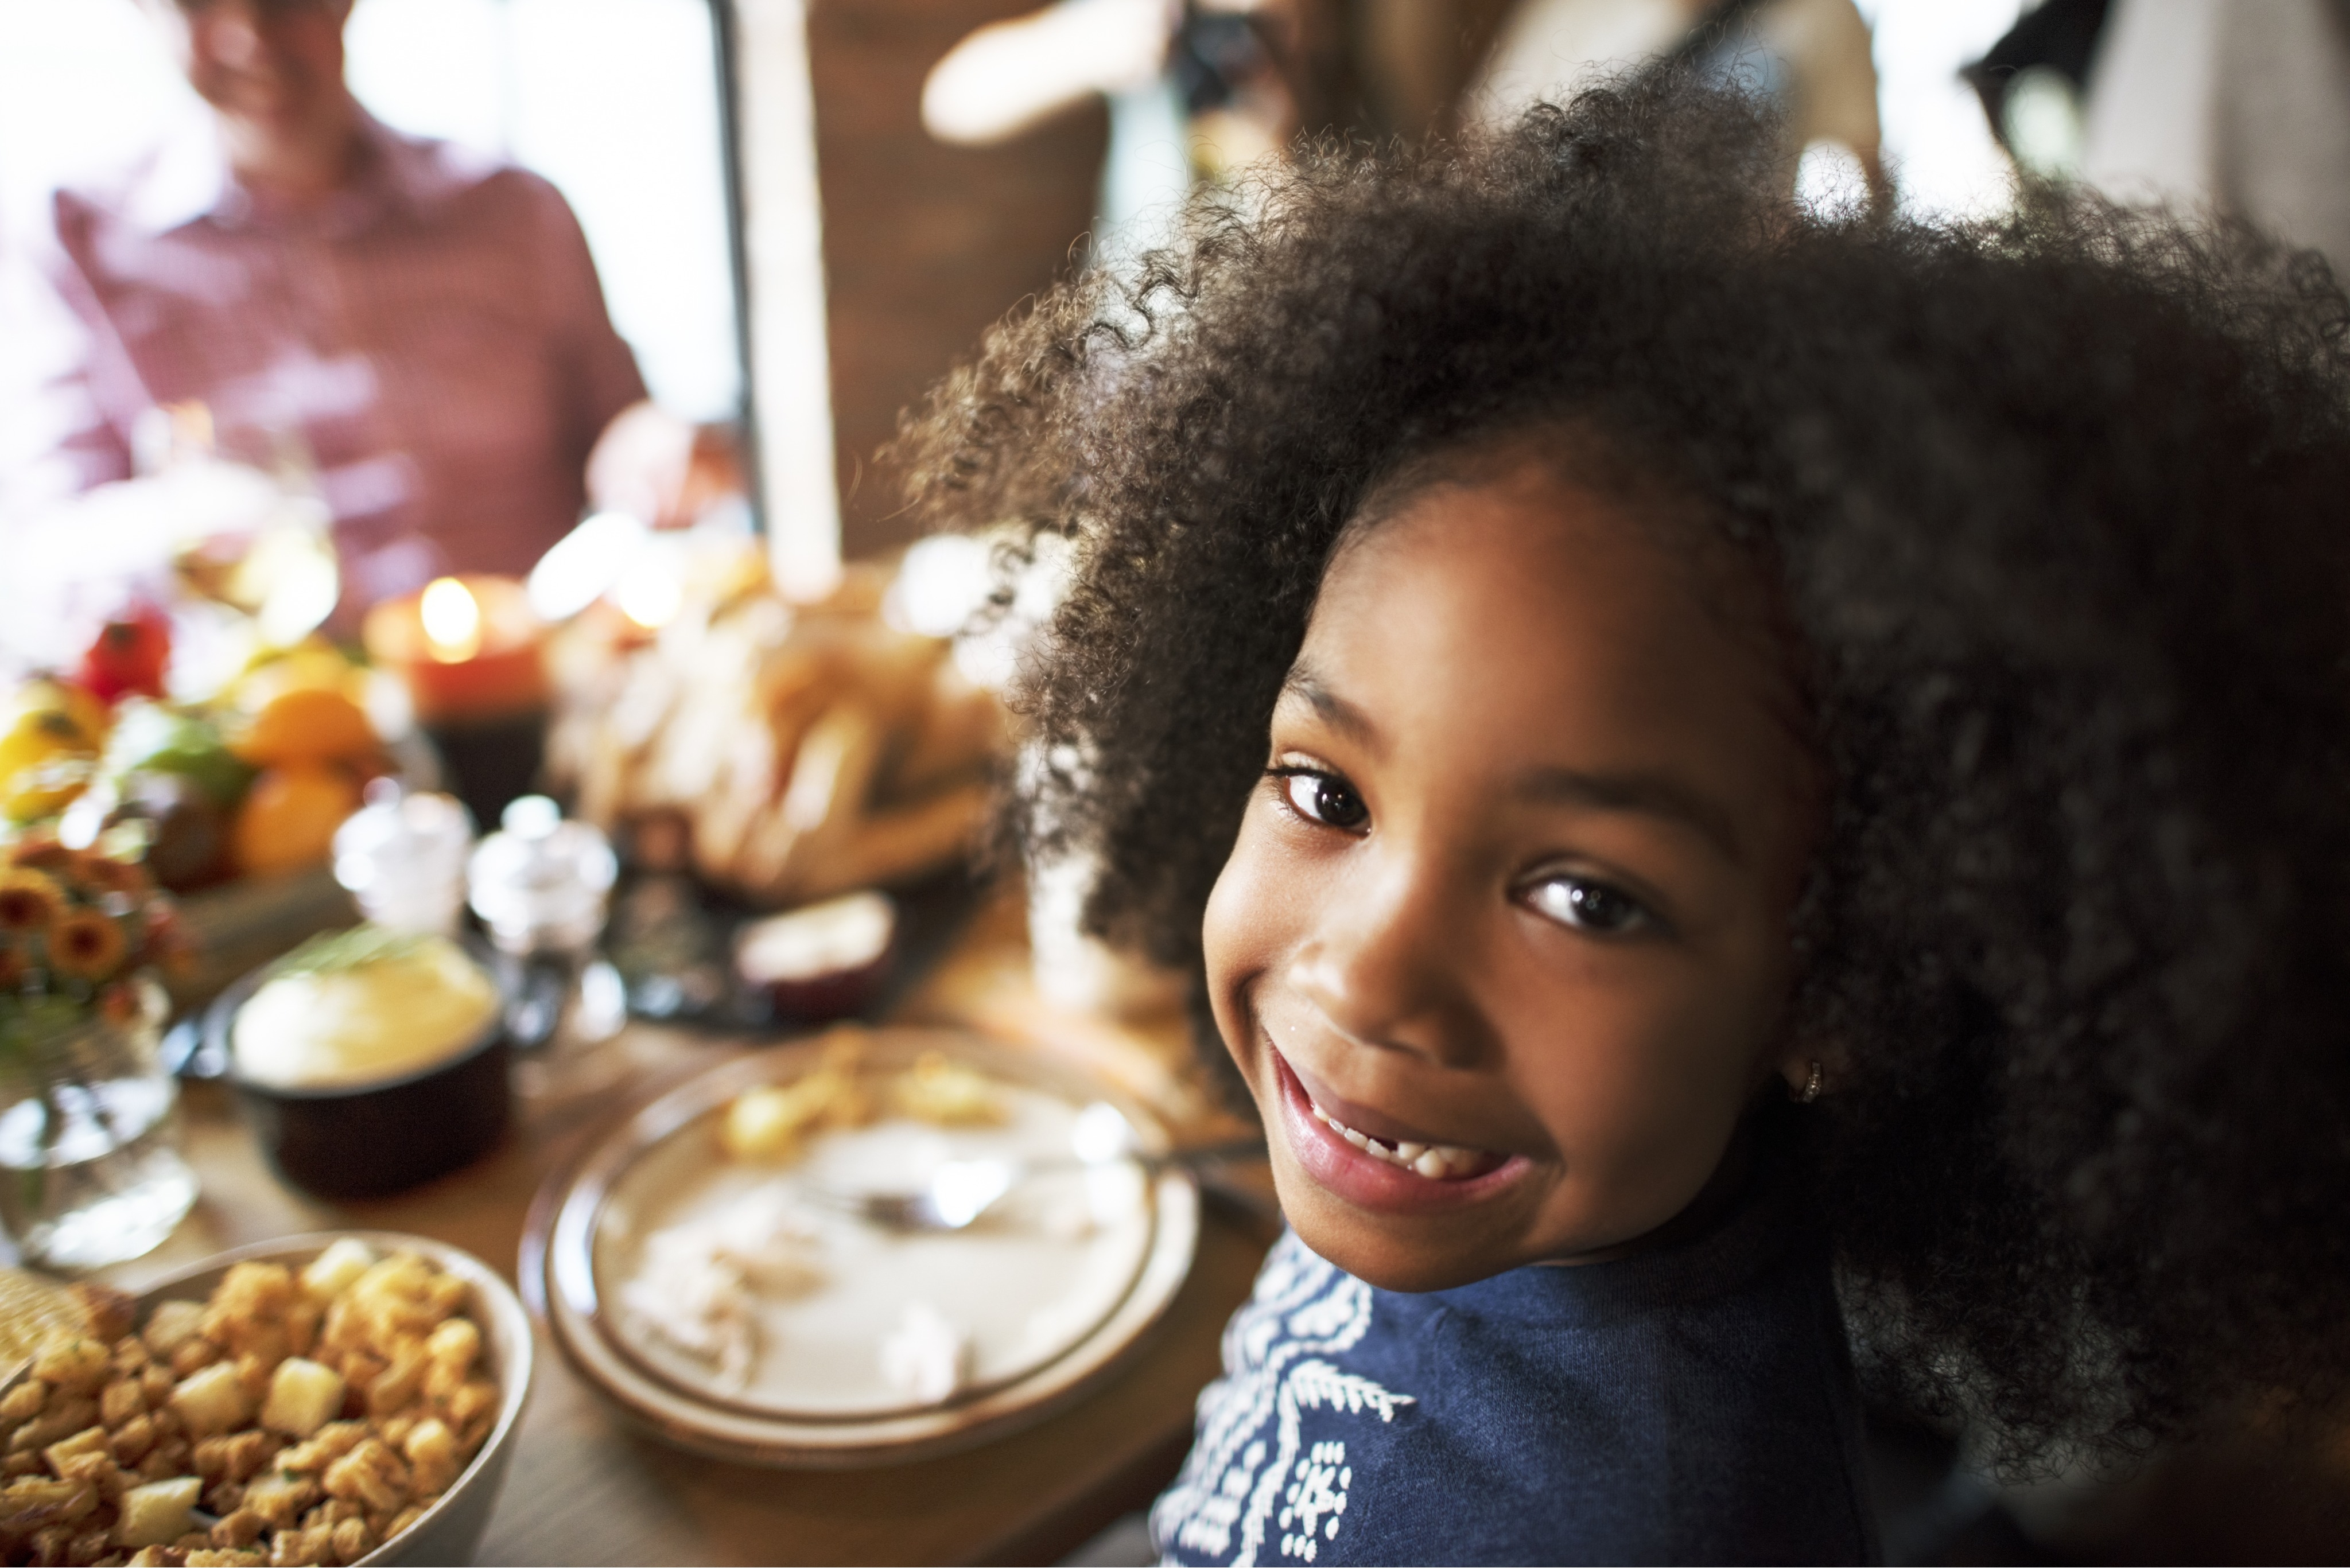 
Cómo ayudar a los niños que tienen dificultades con ciertas comidas durante las cenas festivas 